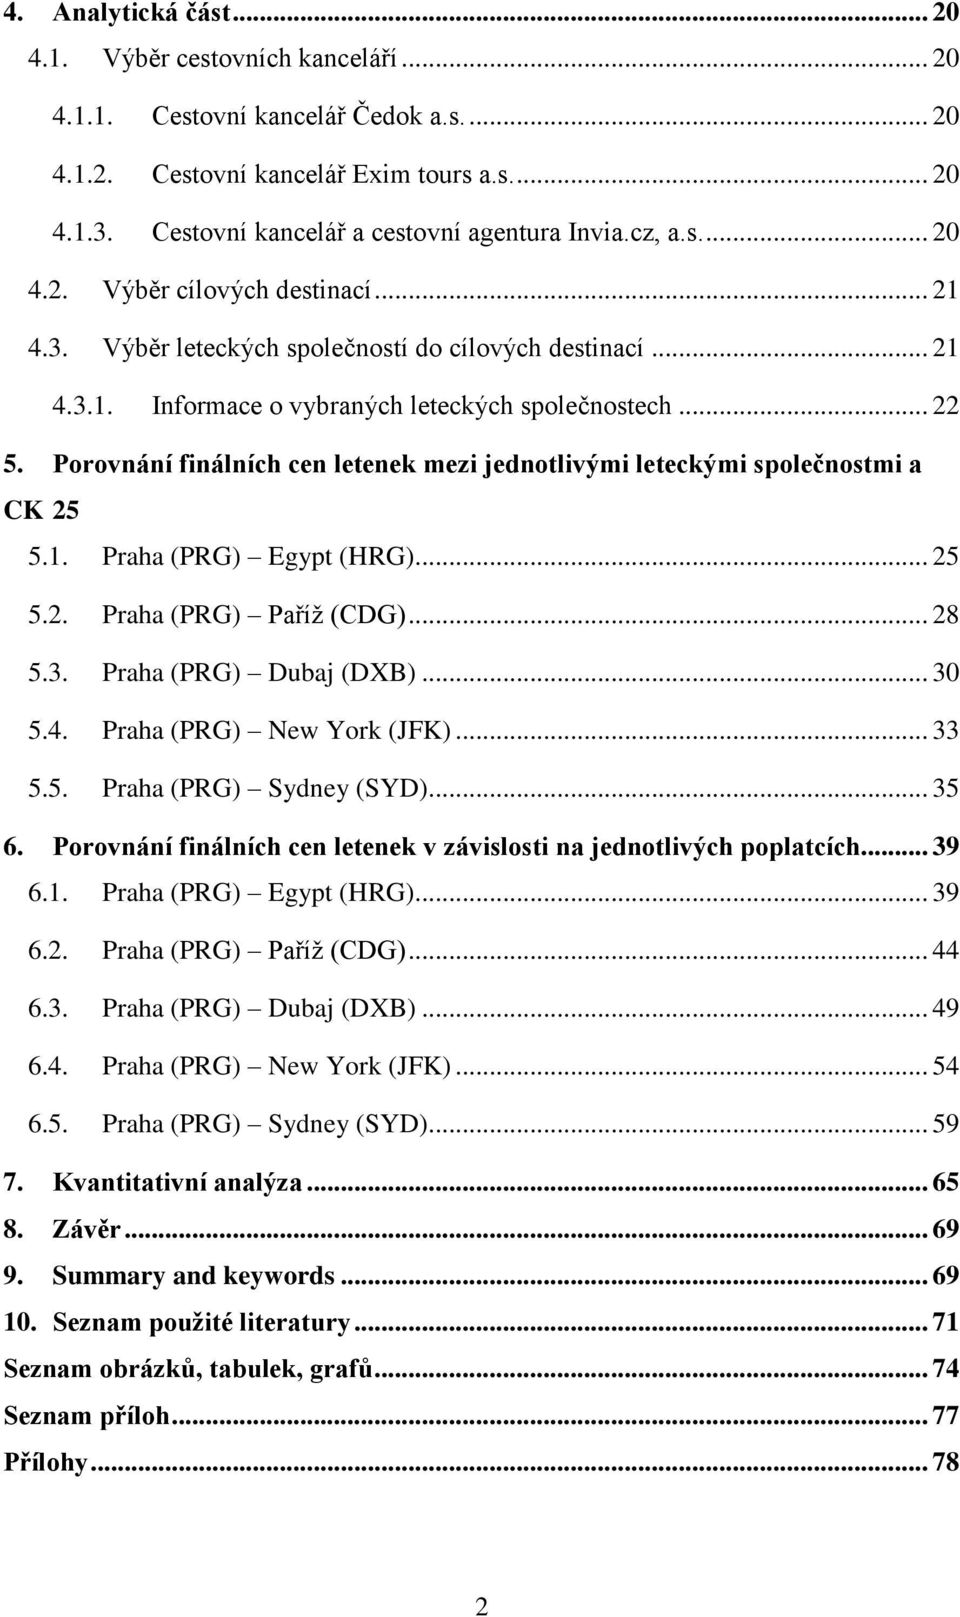 .. 22 5. Porovnání finálních cen letenek mezi jednotlivými leteckými společnostmi a CK 25 5.1. Praha (PRG) Egypt (HRG)... 25 5.2. Praha (PRG) Paříž (CDG)... 28 5.3. Praha (PRG) Dubaj (DXB)... 30 5.4.